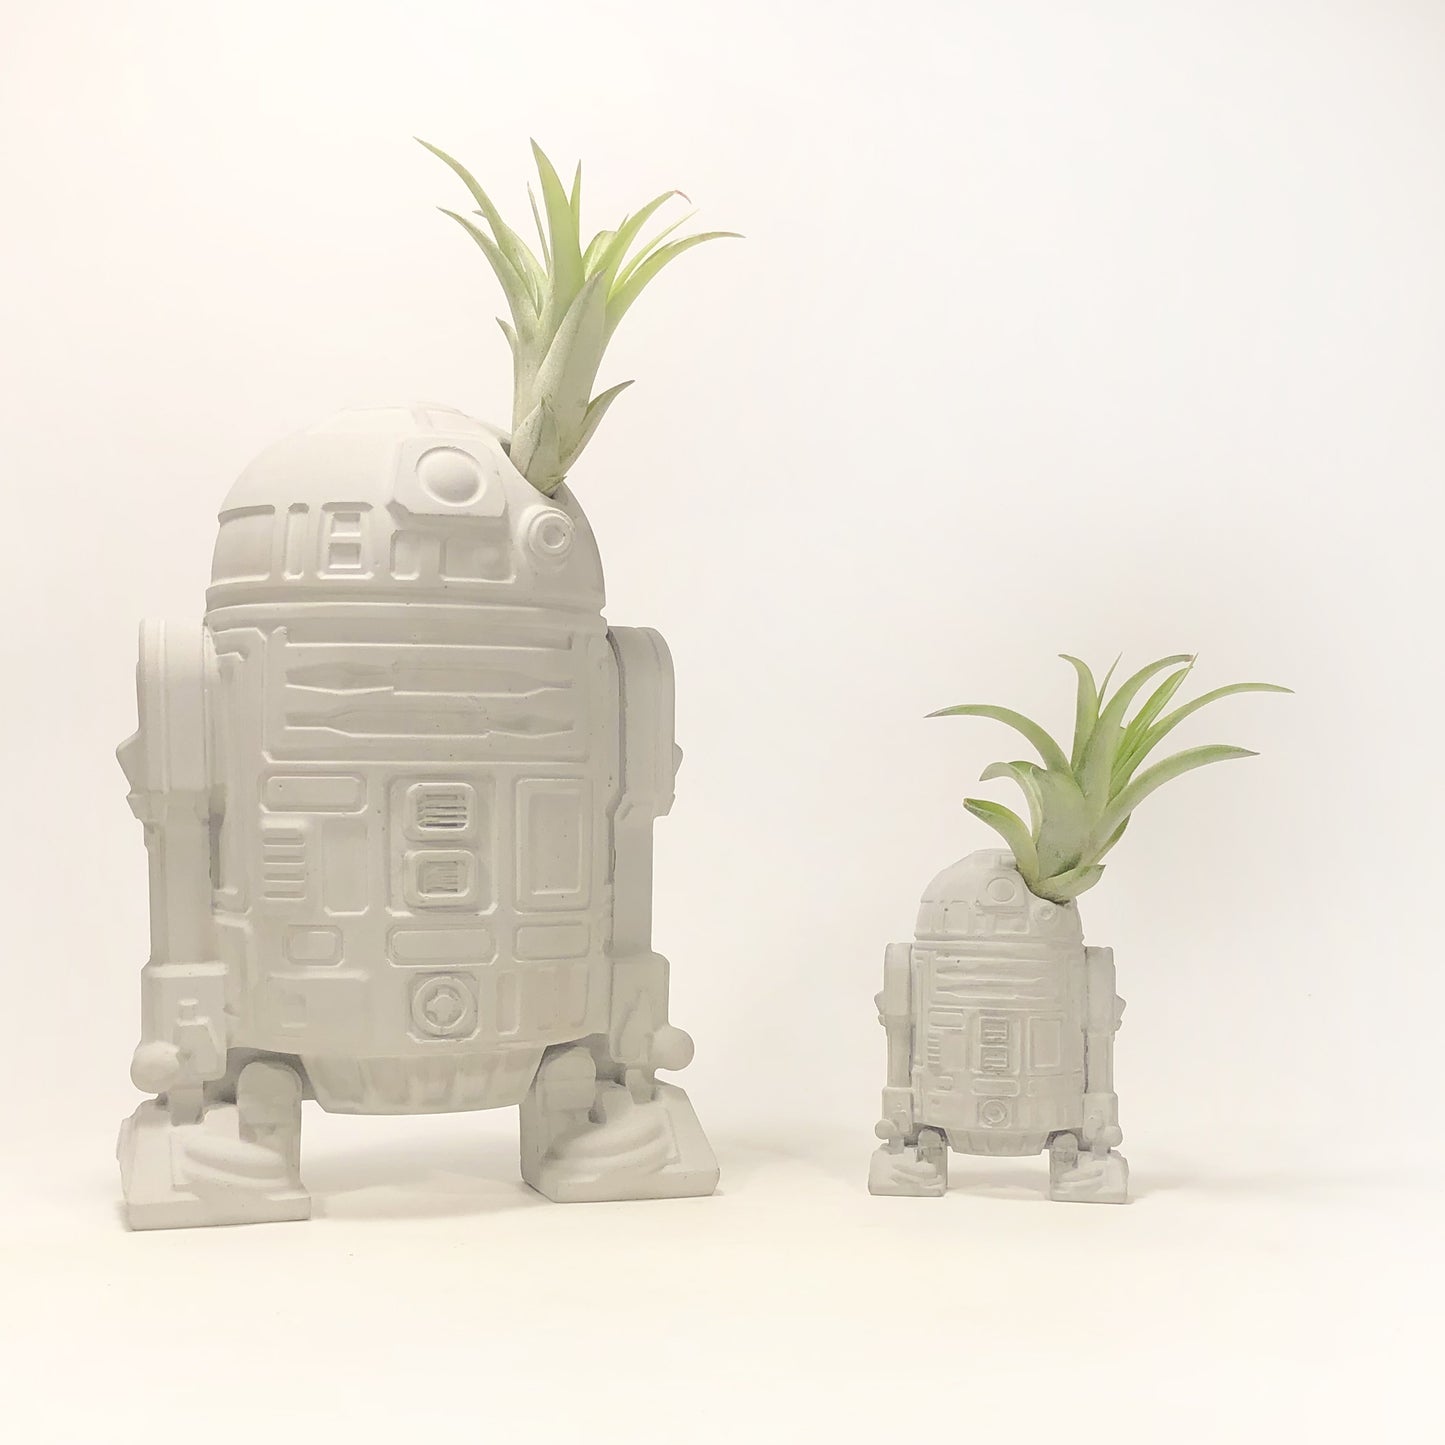 Small R2-D2 Star Wars